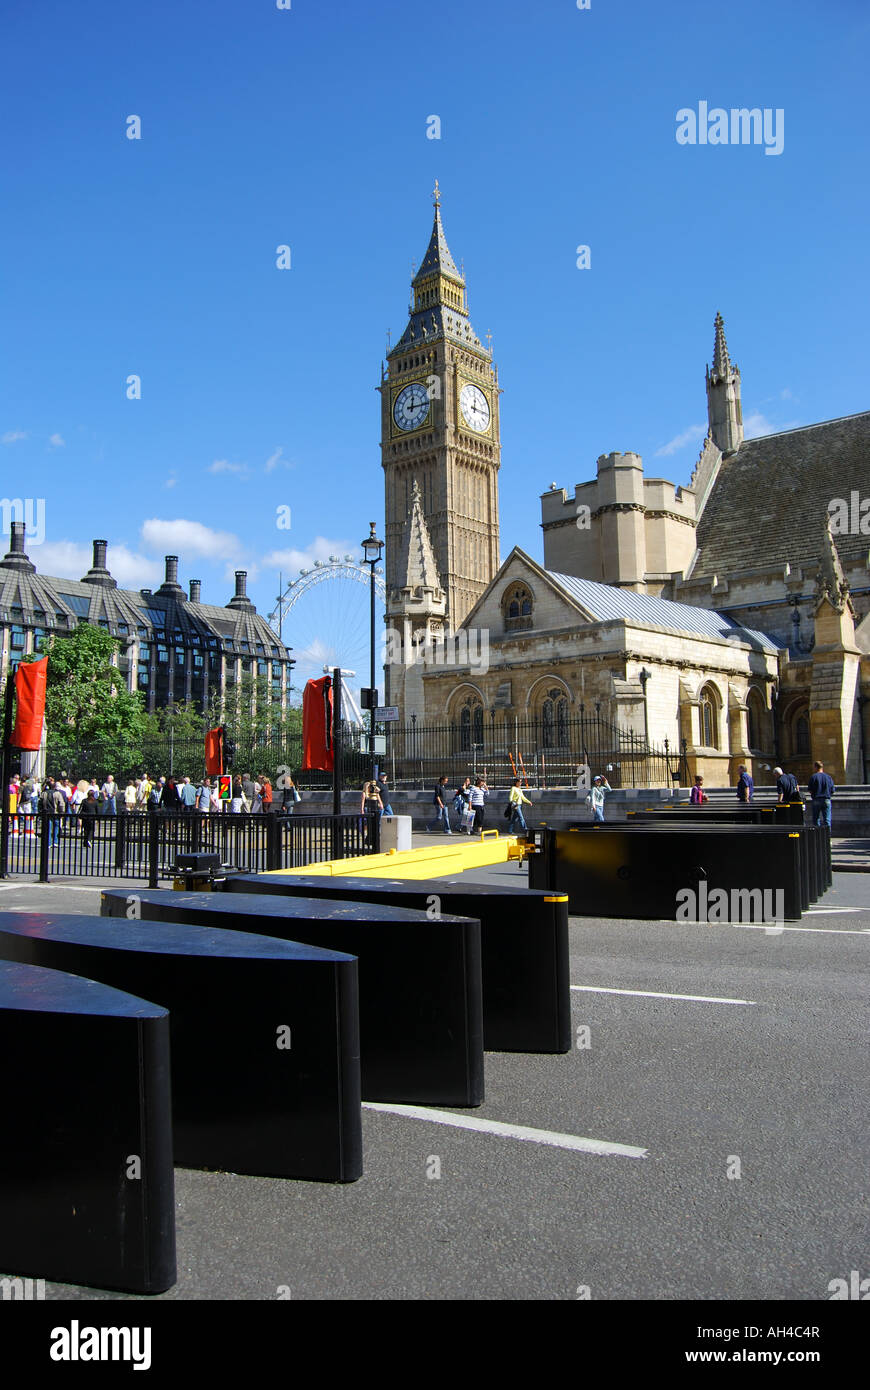 Les barrières de sécurité, de Big Ben et des chambres du Parlement, la place du Parlement, Londres, Angleterre, Royaume-Uni Banque D'Images